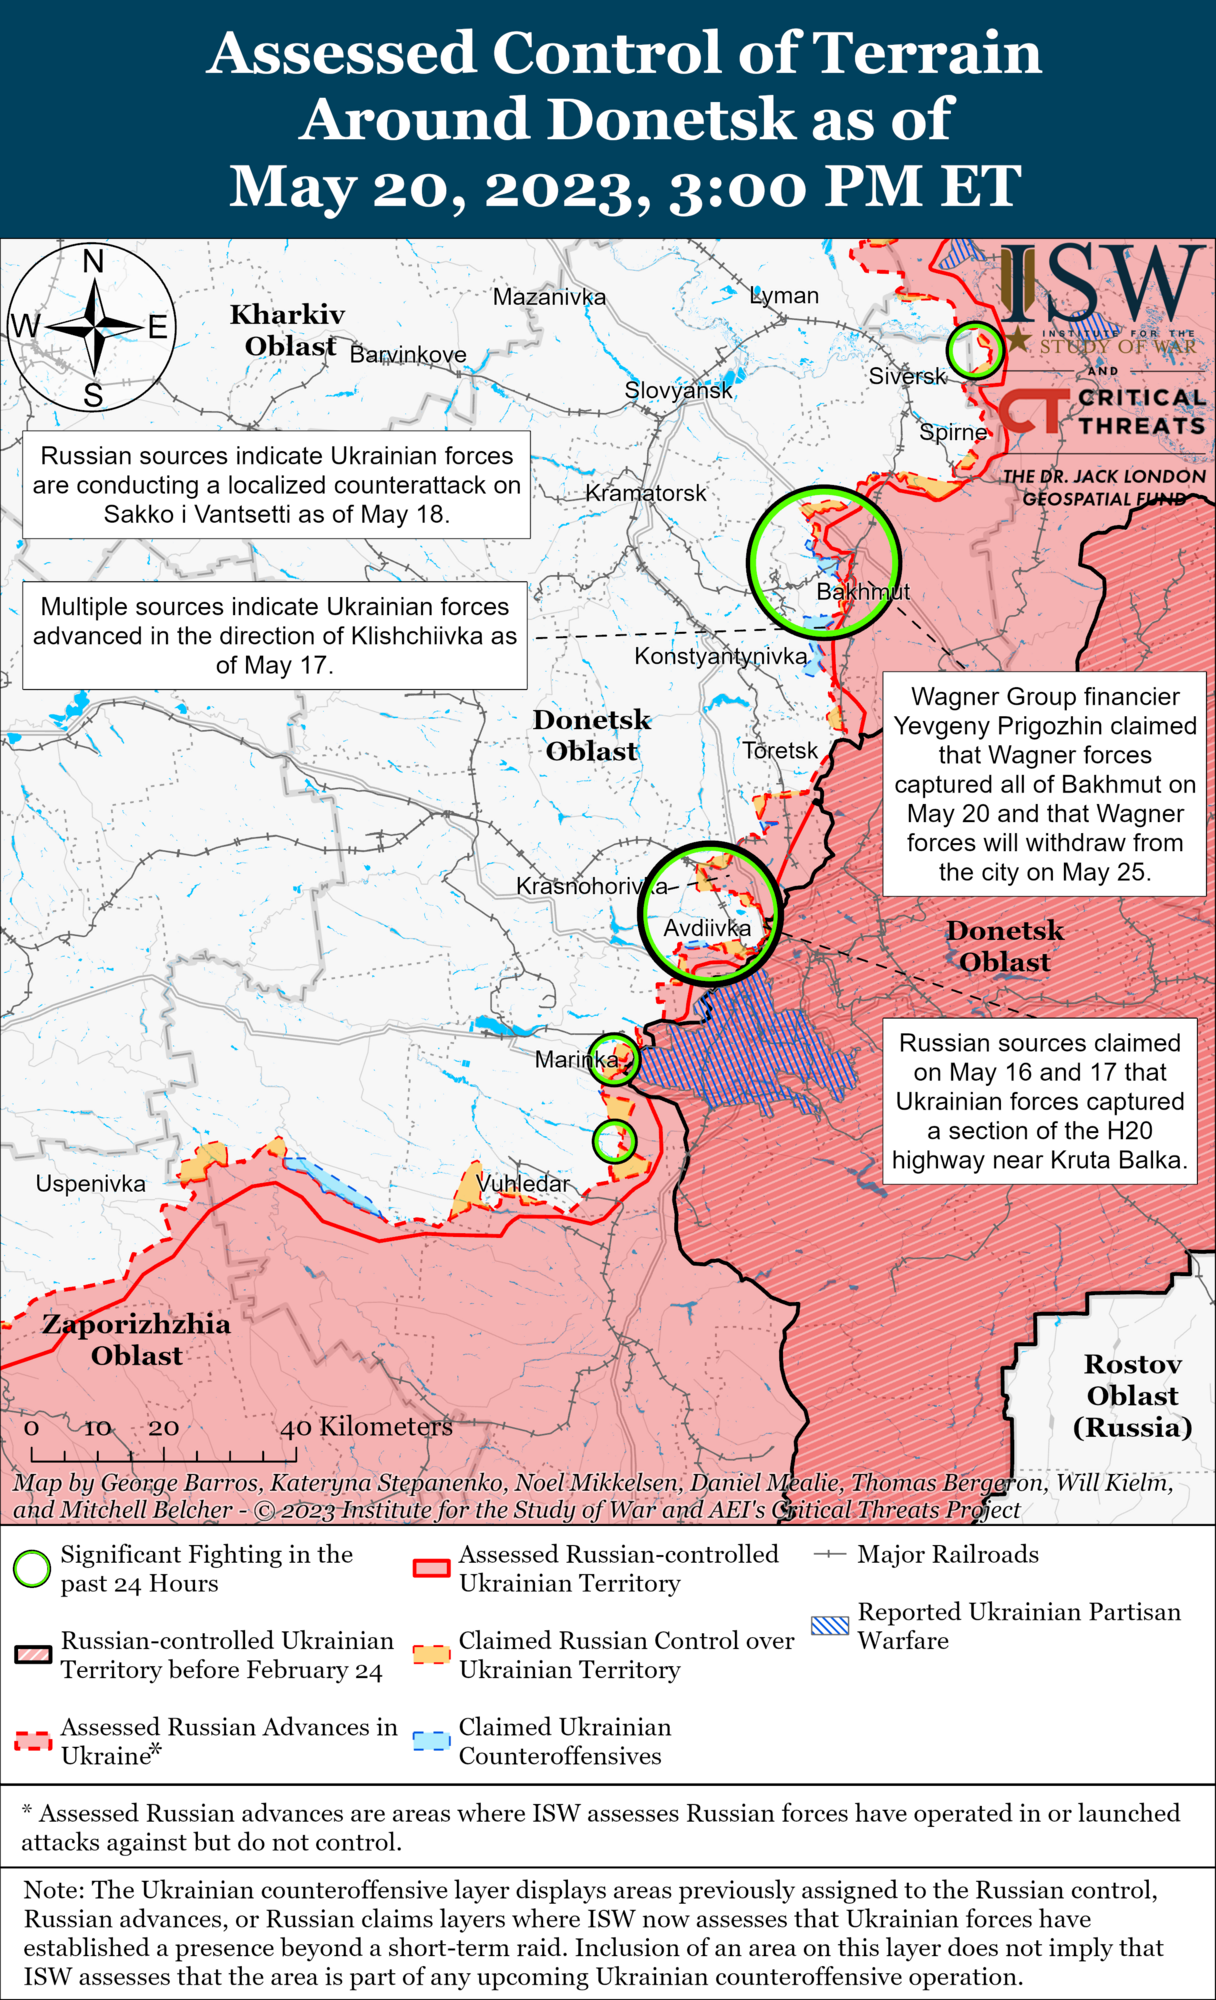 "Захват" кварталов Бахмута не дает армии РФ стратегического преимущества, Пригожин может вводить в заблуждение – ISW